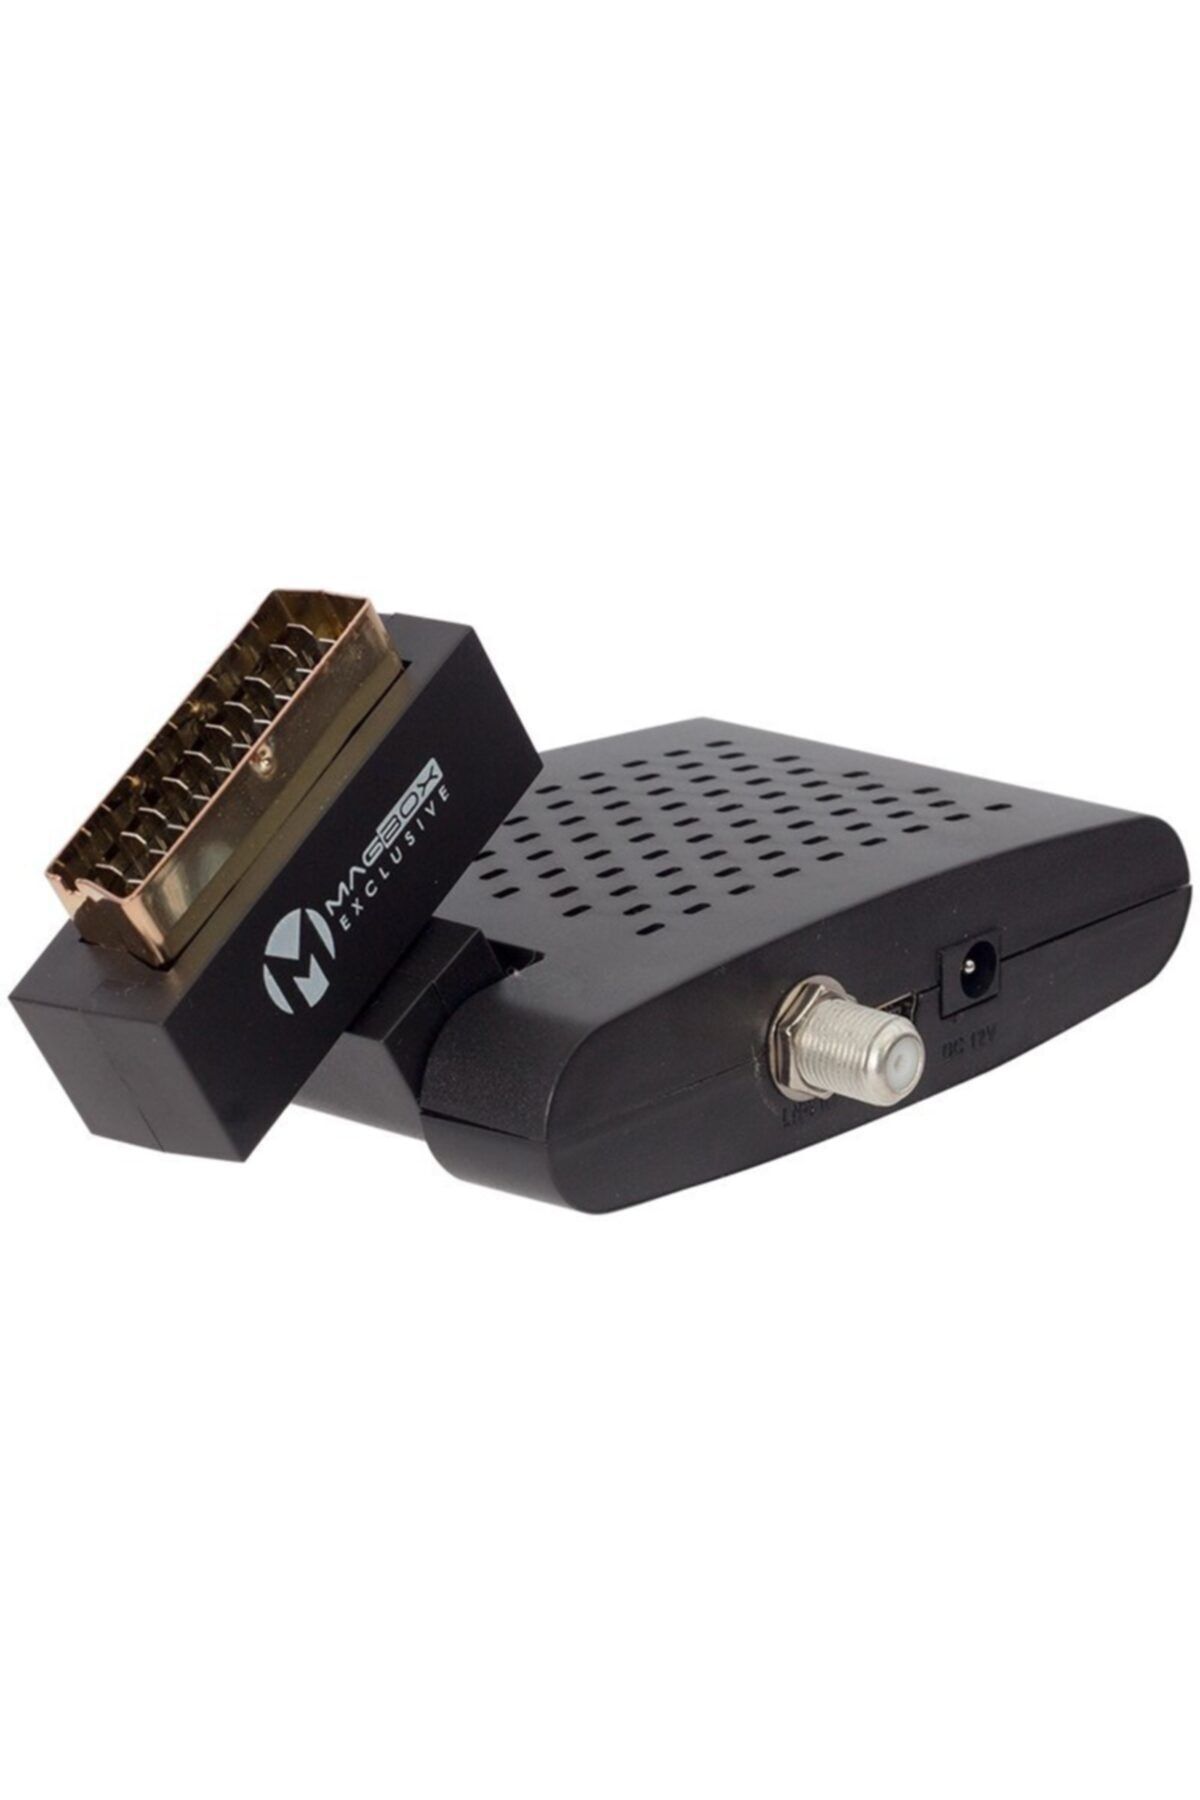 MAGBOX Exclusıve Mini Sd Scart Uydu Alıcısı Tkgsli Kumanda-18160/ Alıcı Göz-533